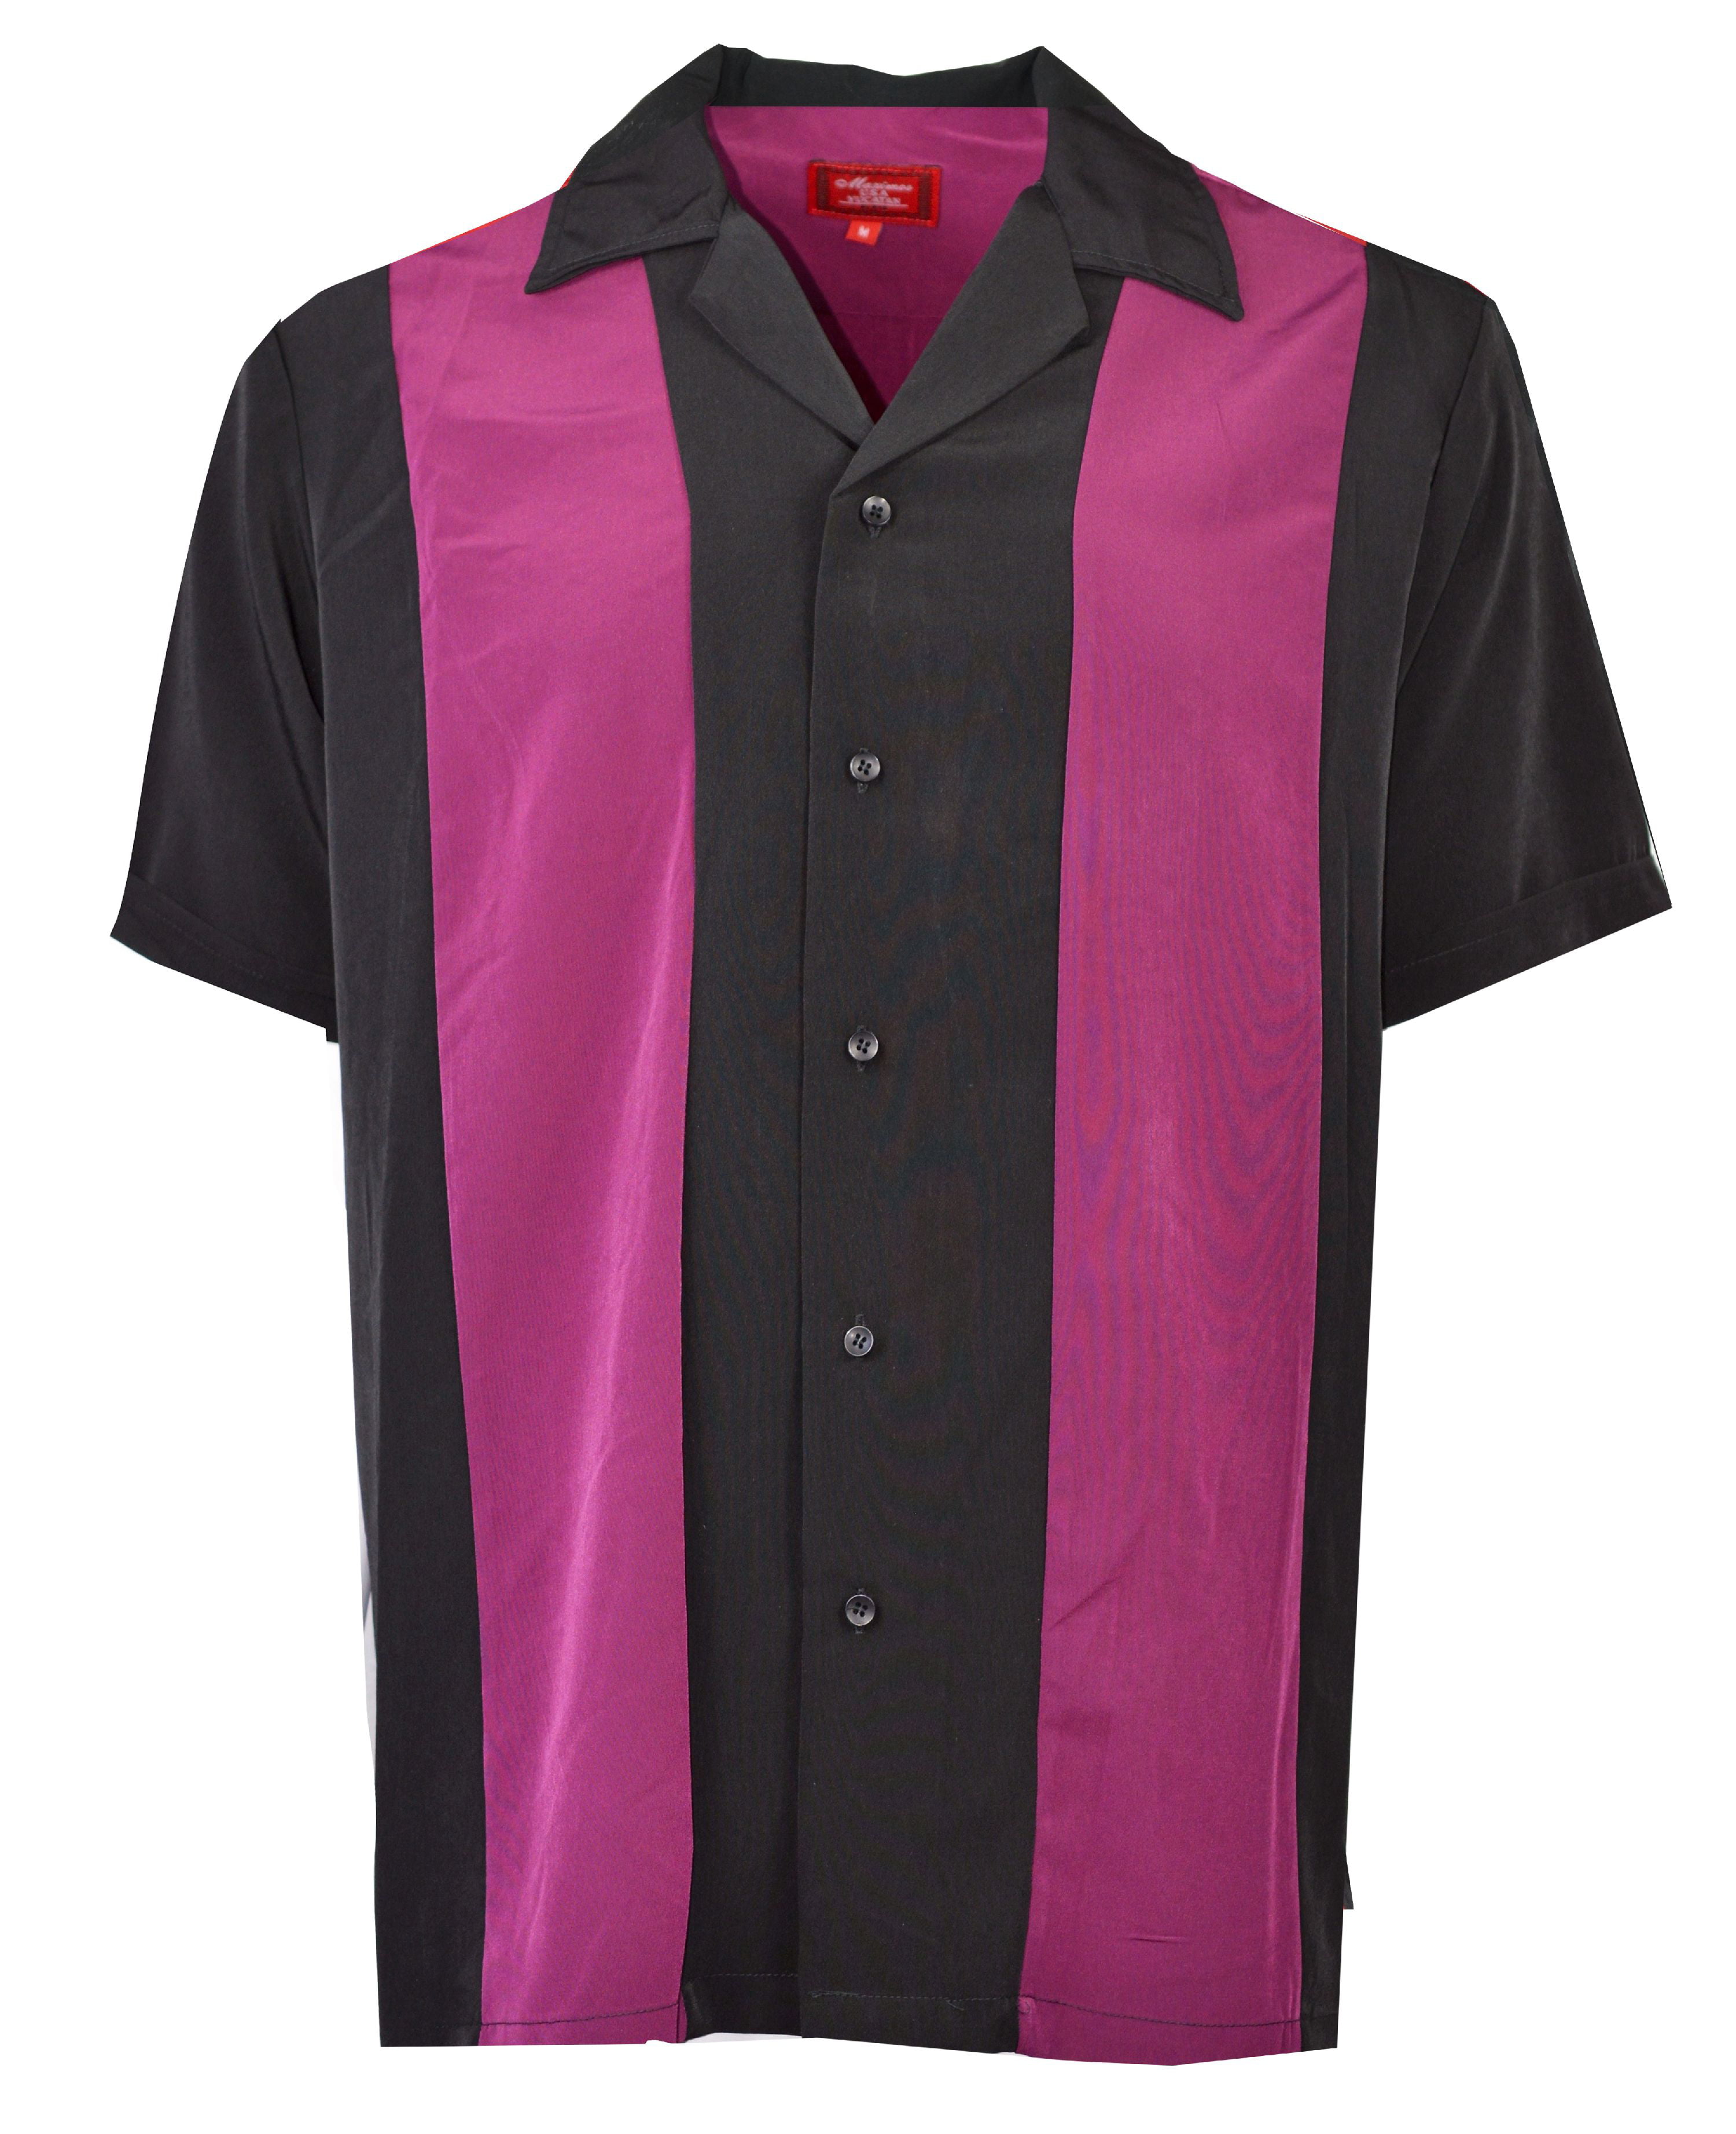 Maximos - Maximos Men's Bowling Shirt Retro Button-Up Short Sleeved ...